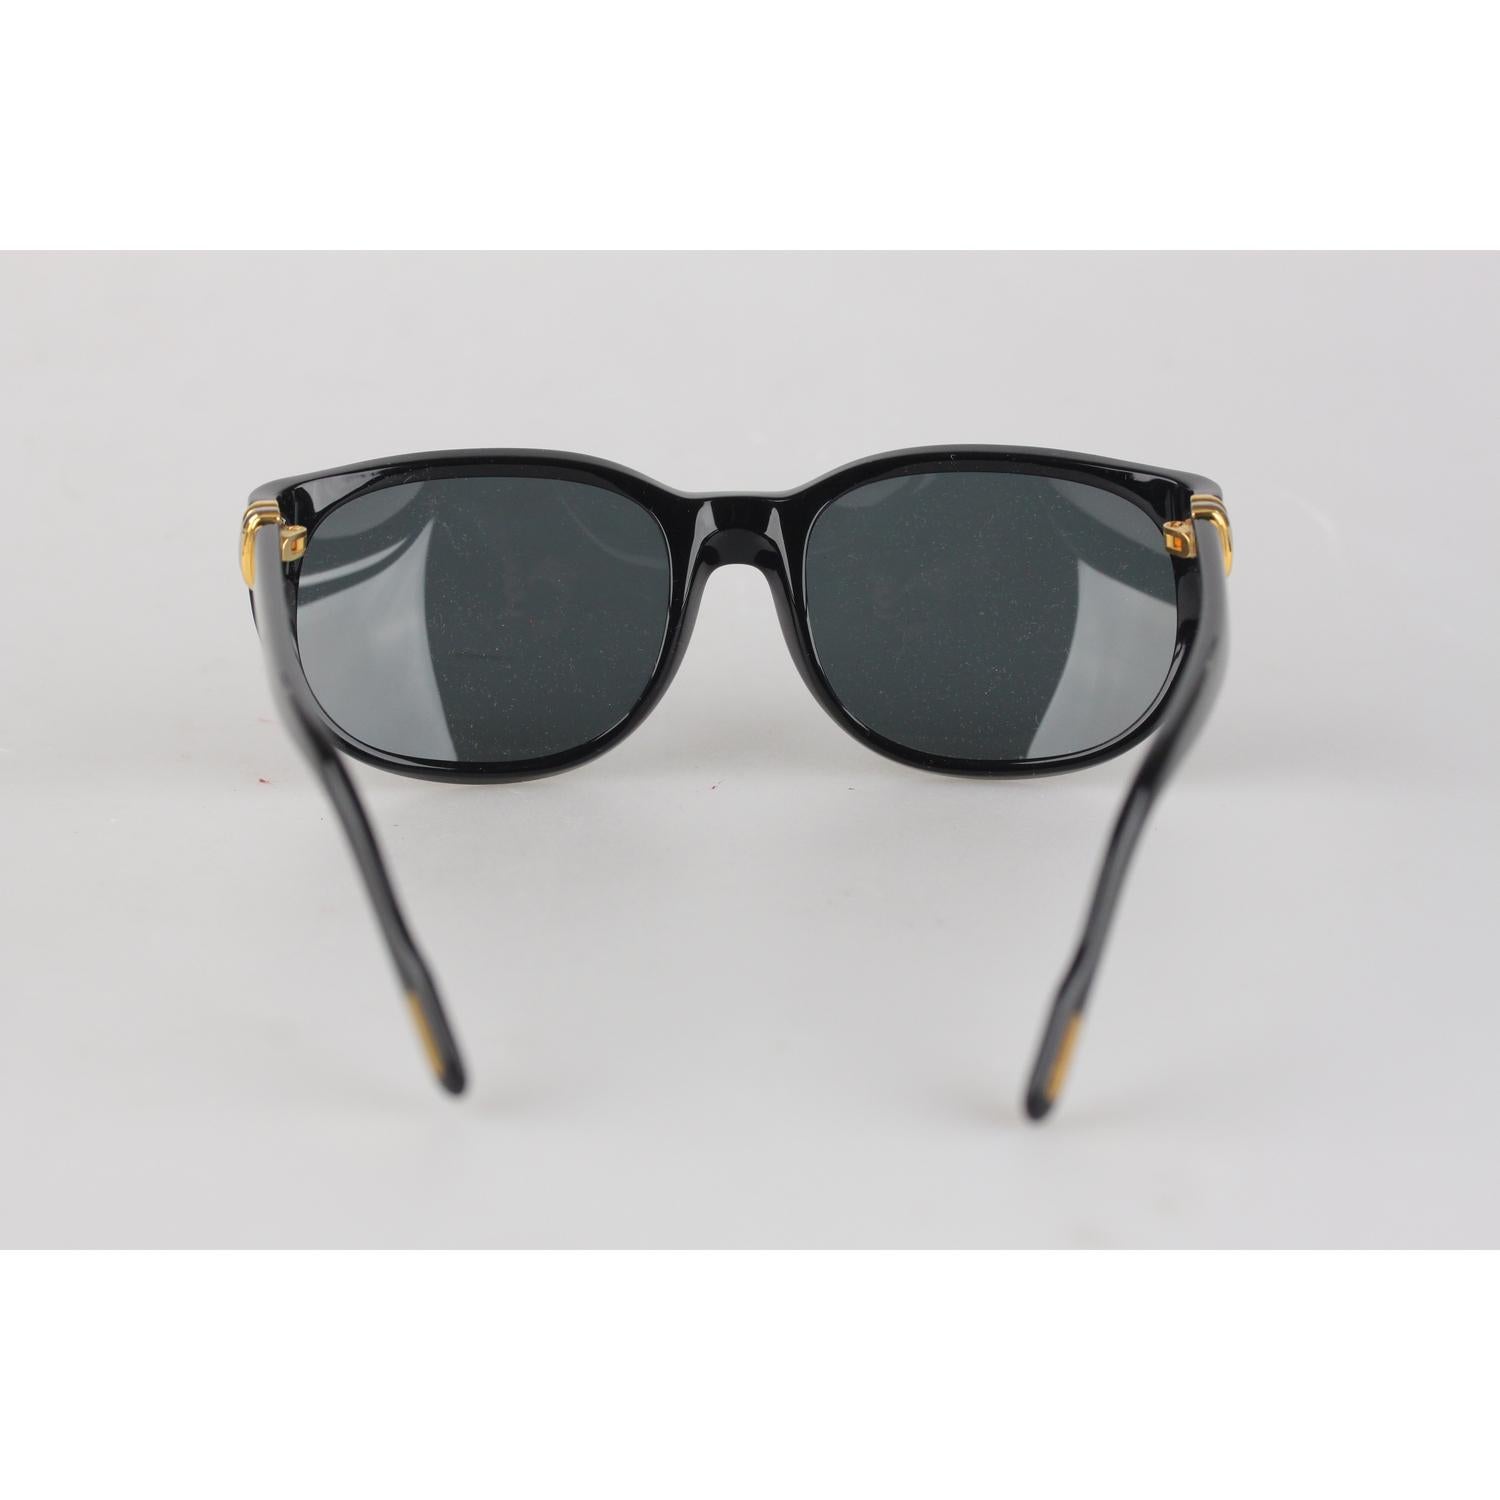 Cartier Paris Black Unisex Sunglasses Noir T8200184 New Old Stock 2